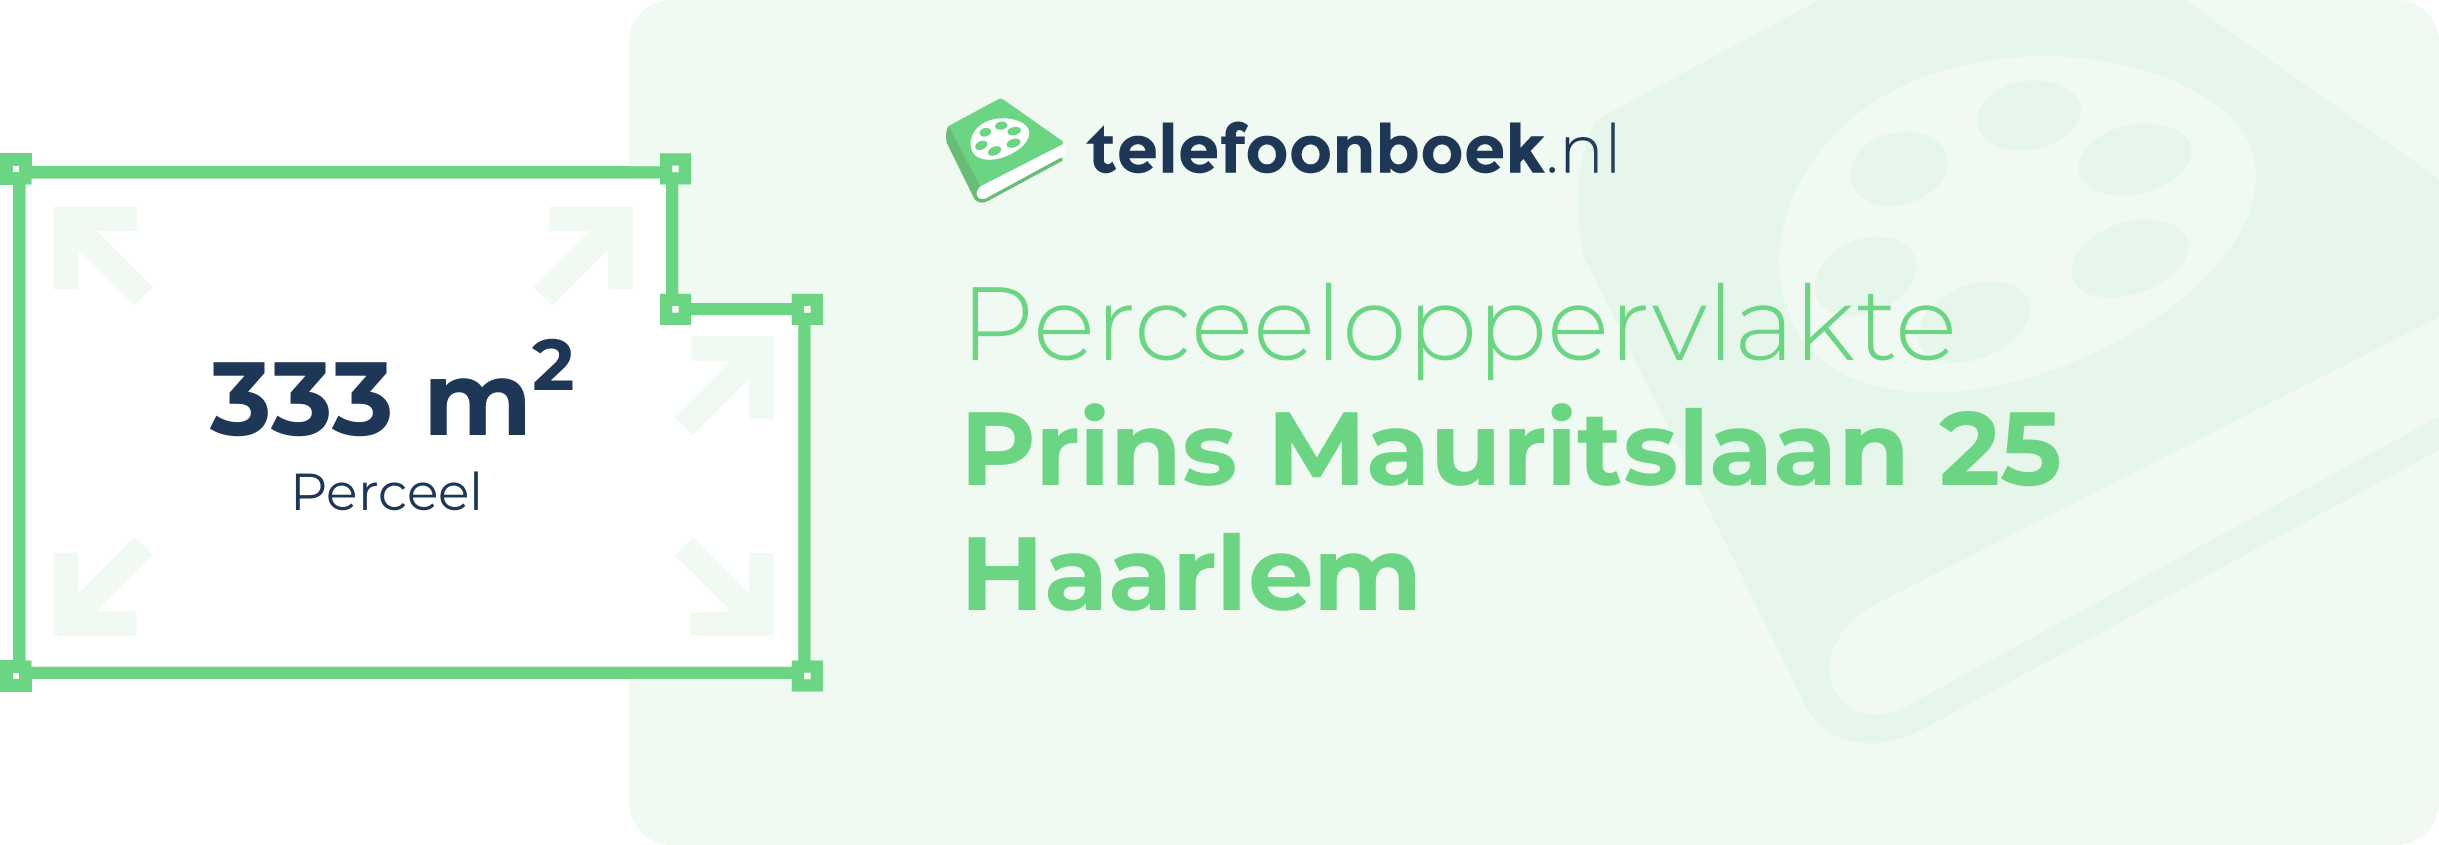 Perceeloppervlakte Prins Mauritslaan 25 Haarlem